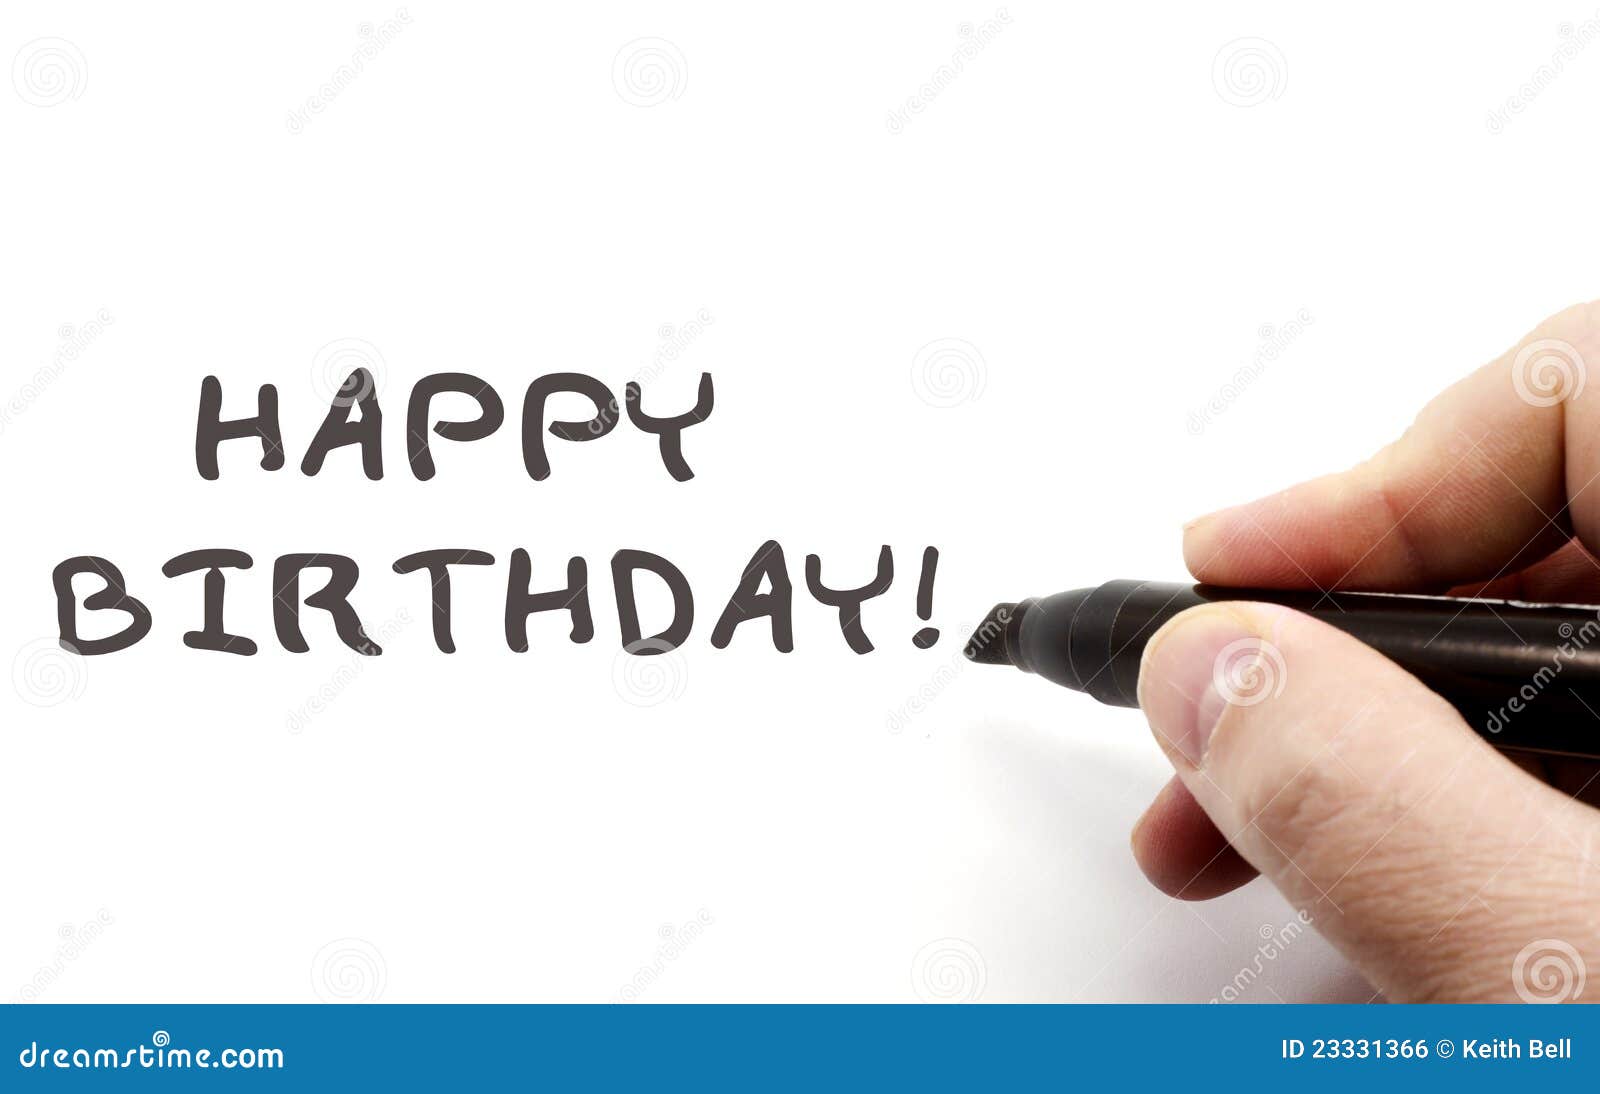 Happy Birthday Hand Writing Stock Photo - Image of black, hand: 23331366